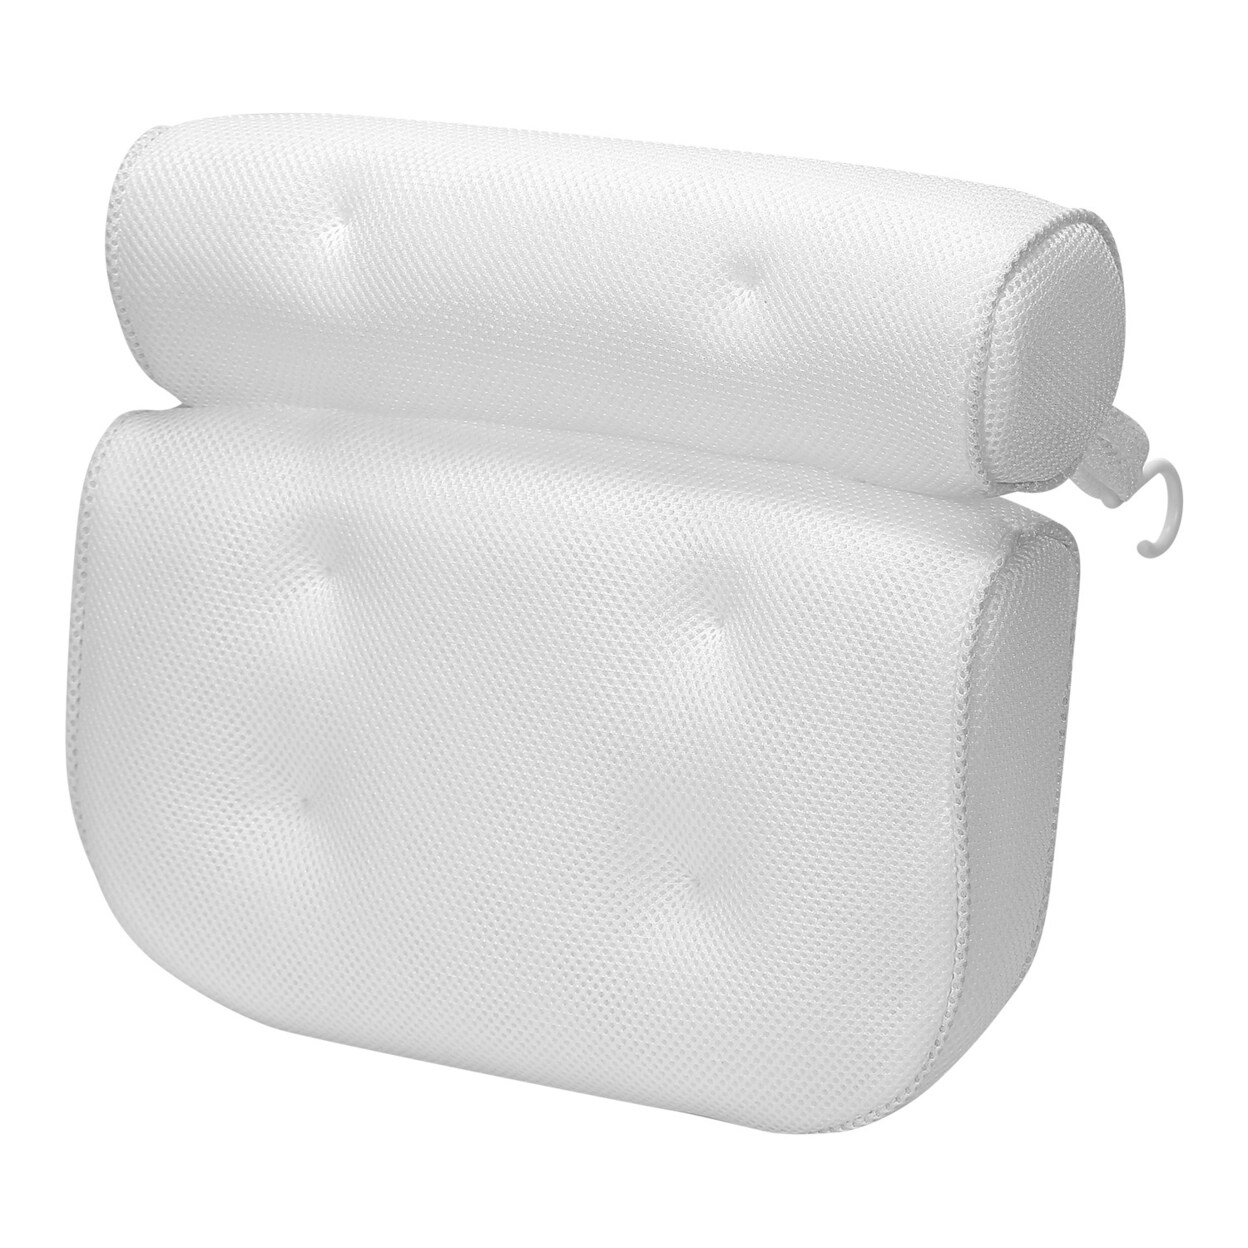 Global Phoenix Bathtub Pillow Suction Cup Bath Pillow Air Mesh Breathable Spa Bath Pillow